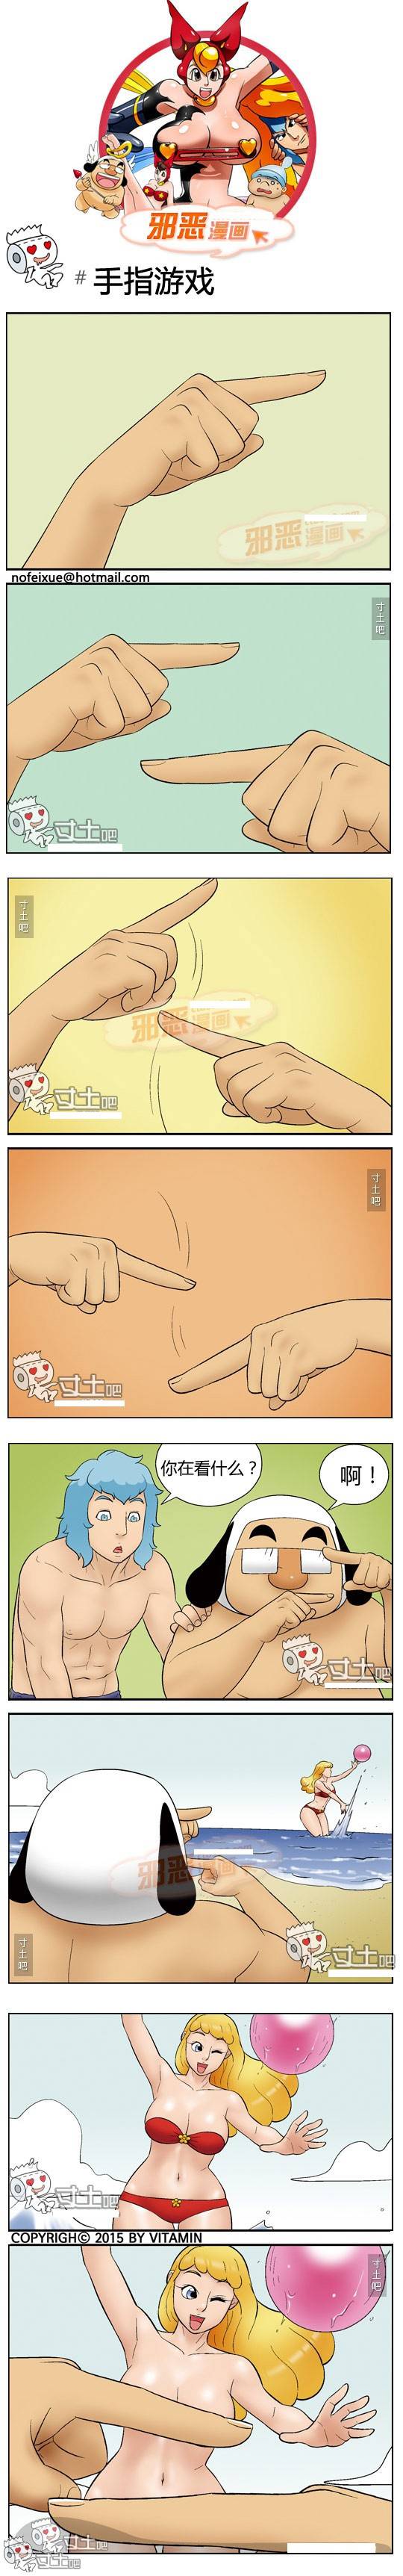 邪恶漫画爆笑囧图第388刊：手指游戏